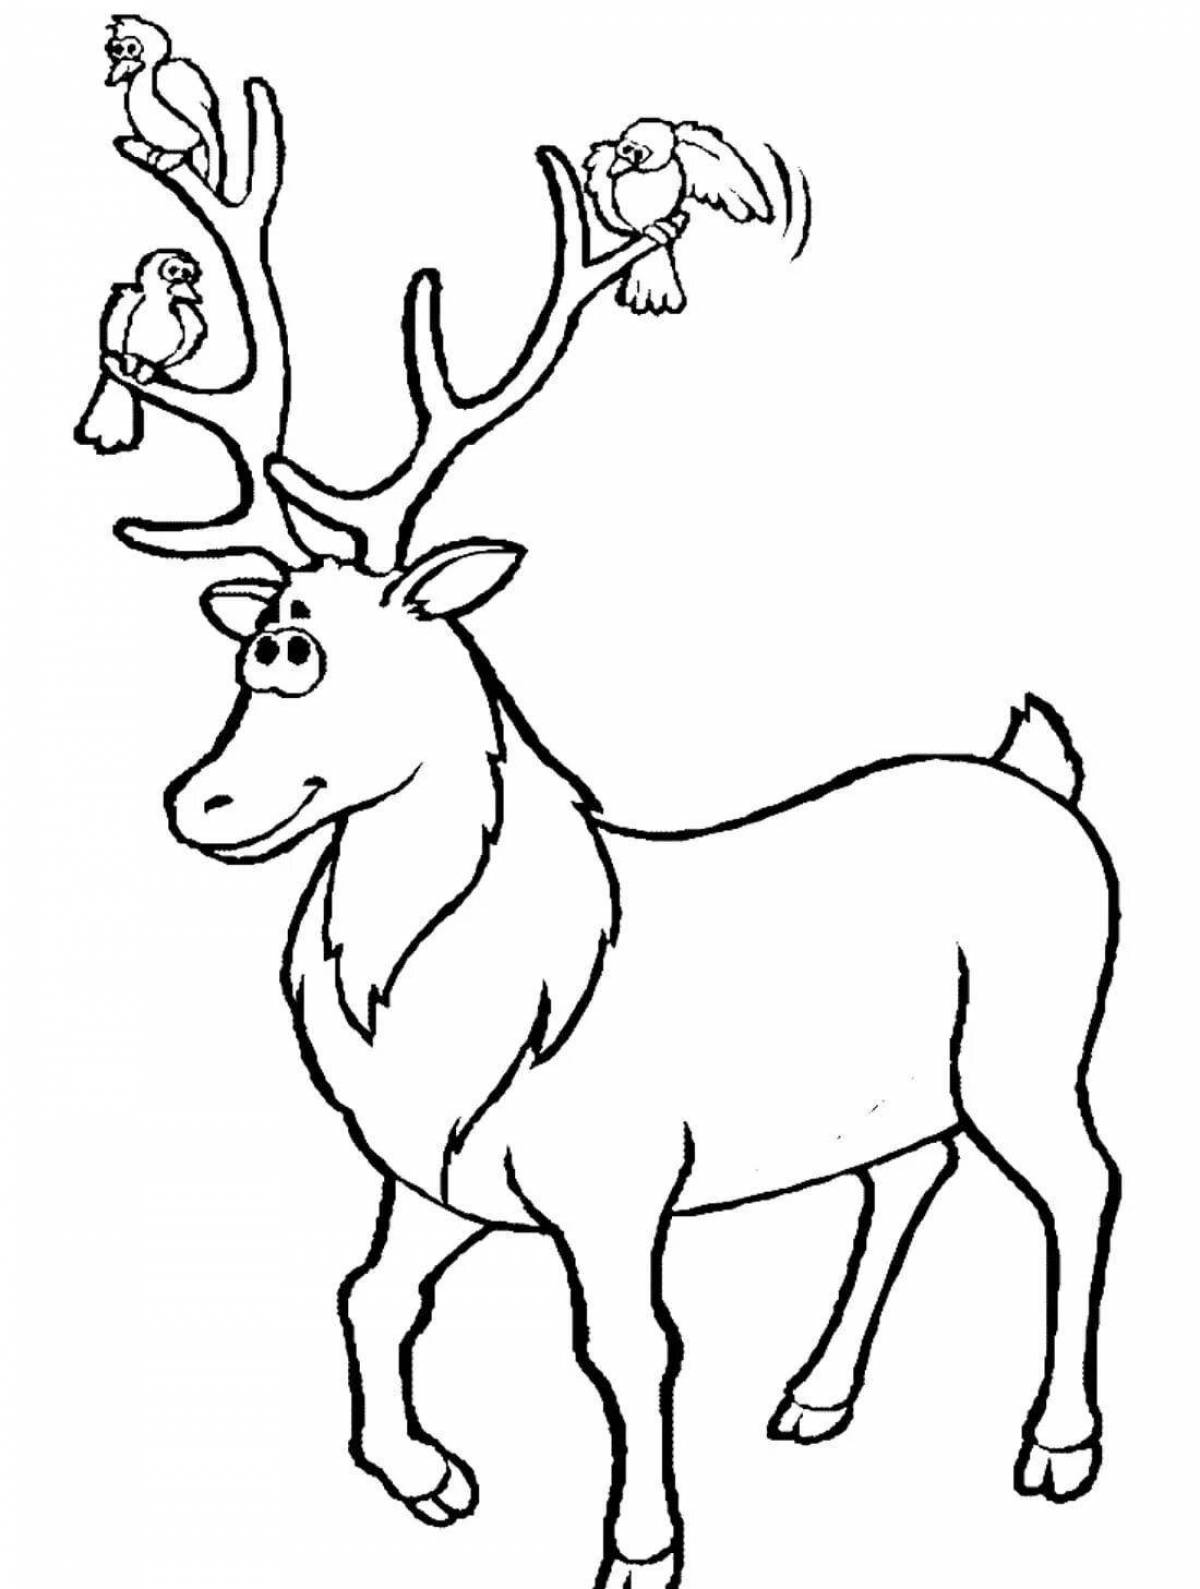 Coloring book nice red deer